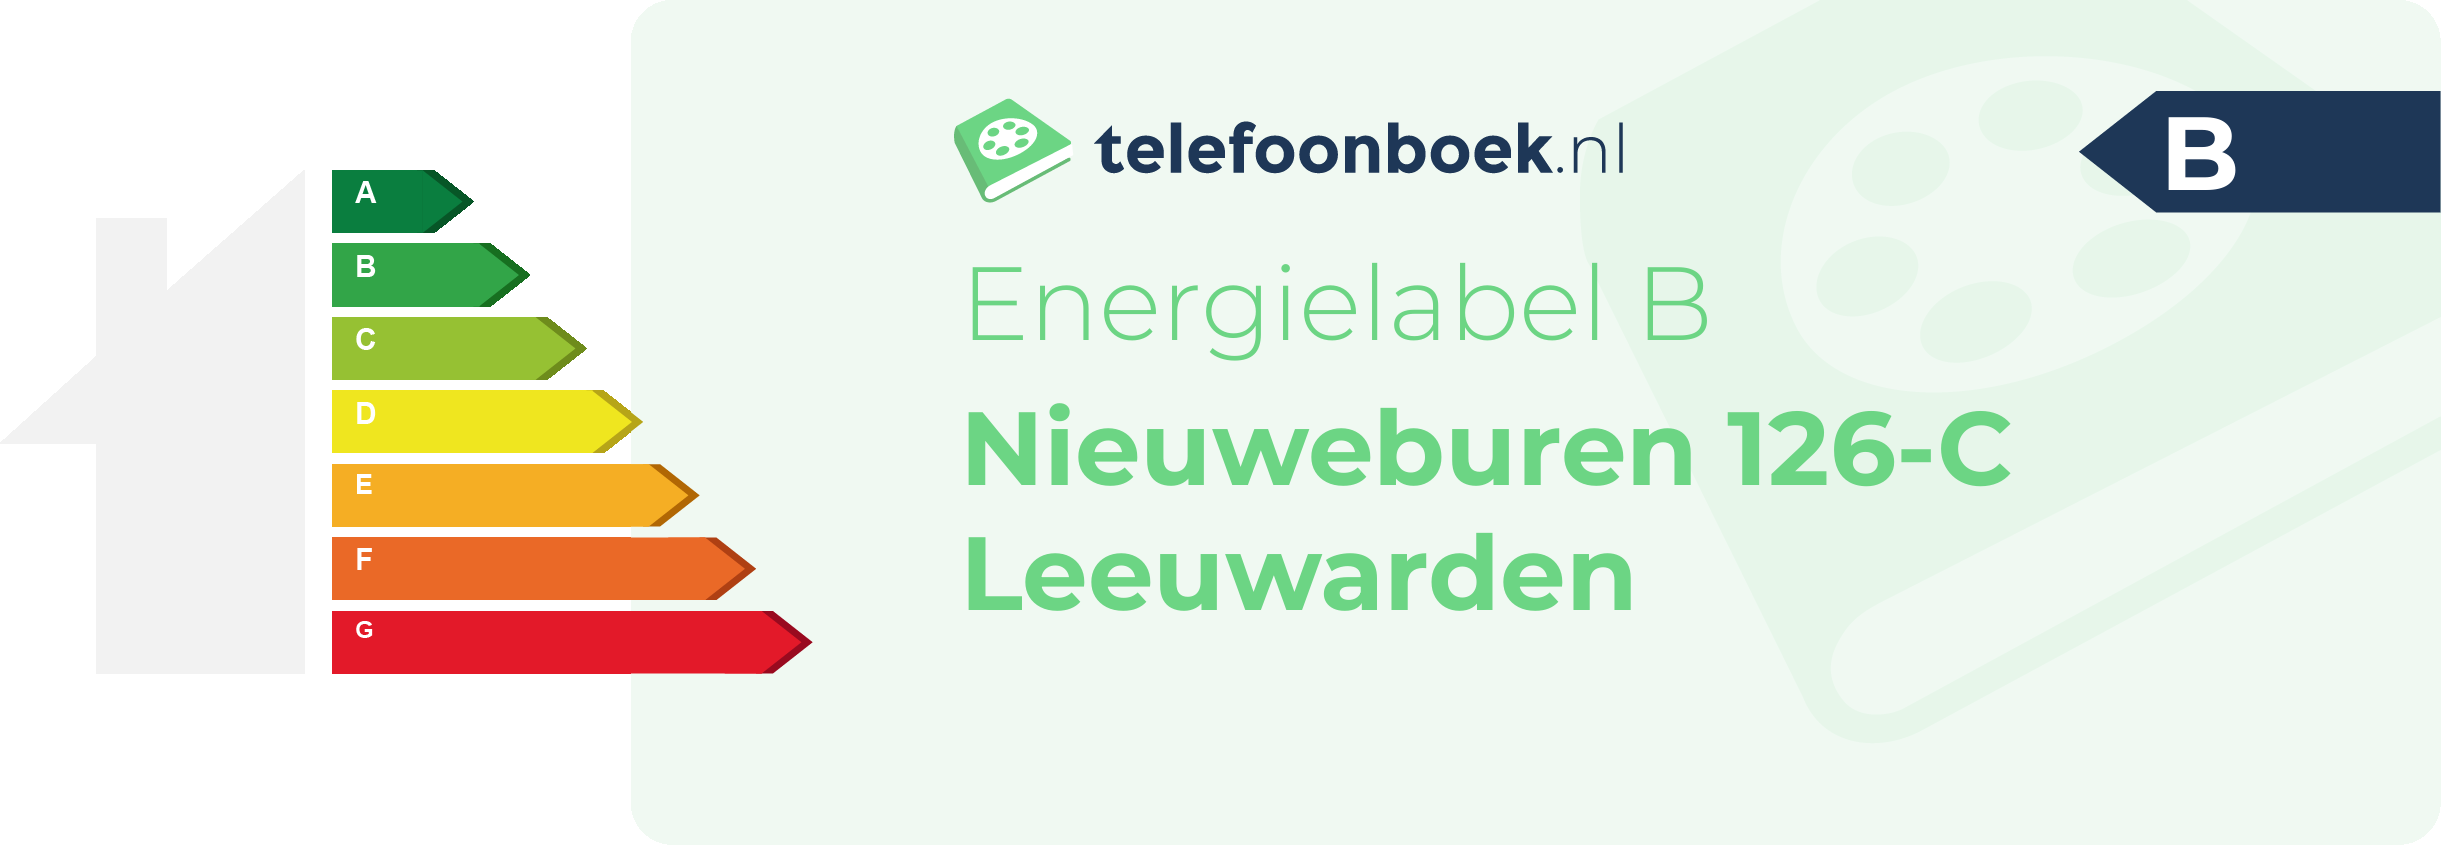 Energielabel Nieuweburen 126-C Leeuwarden